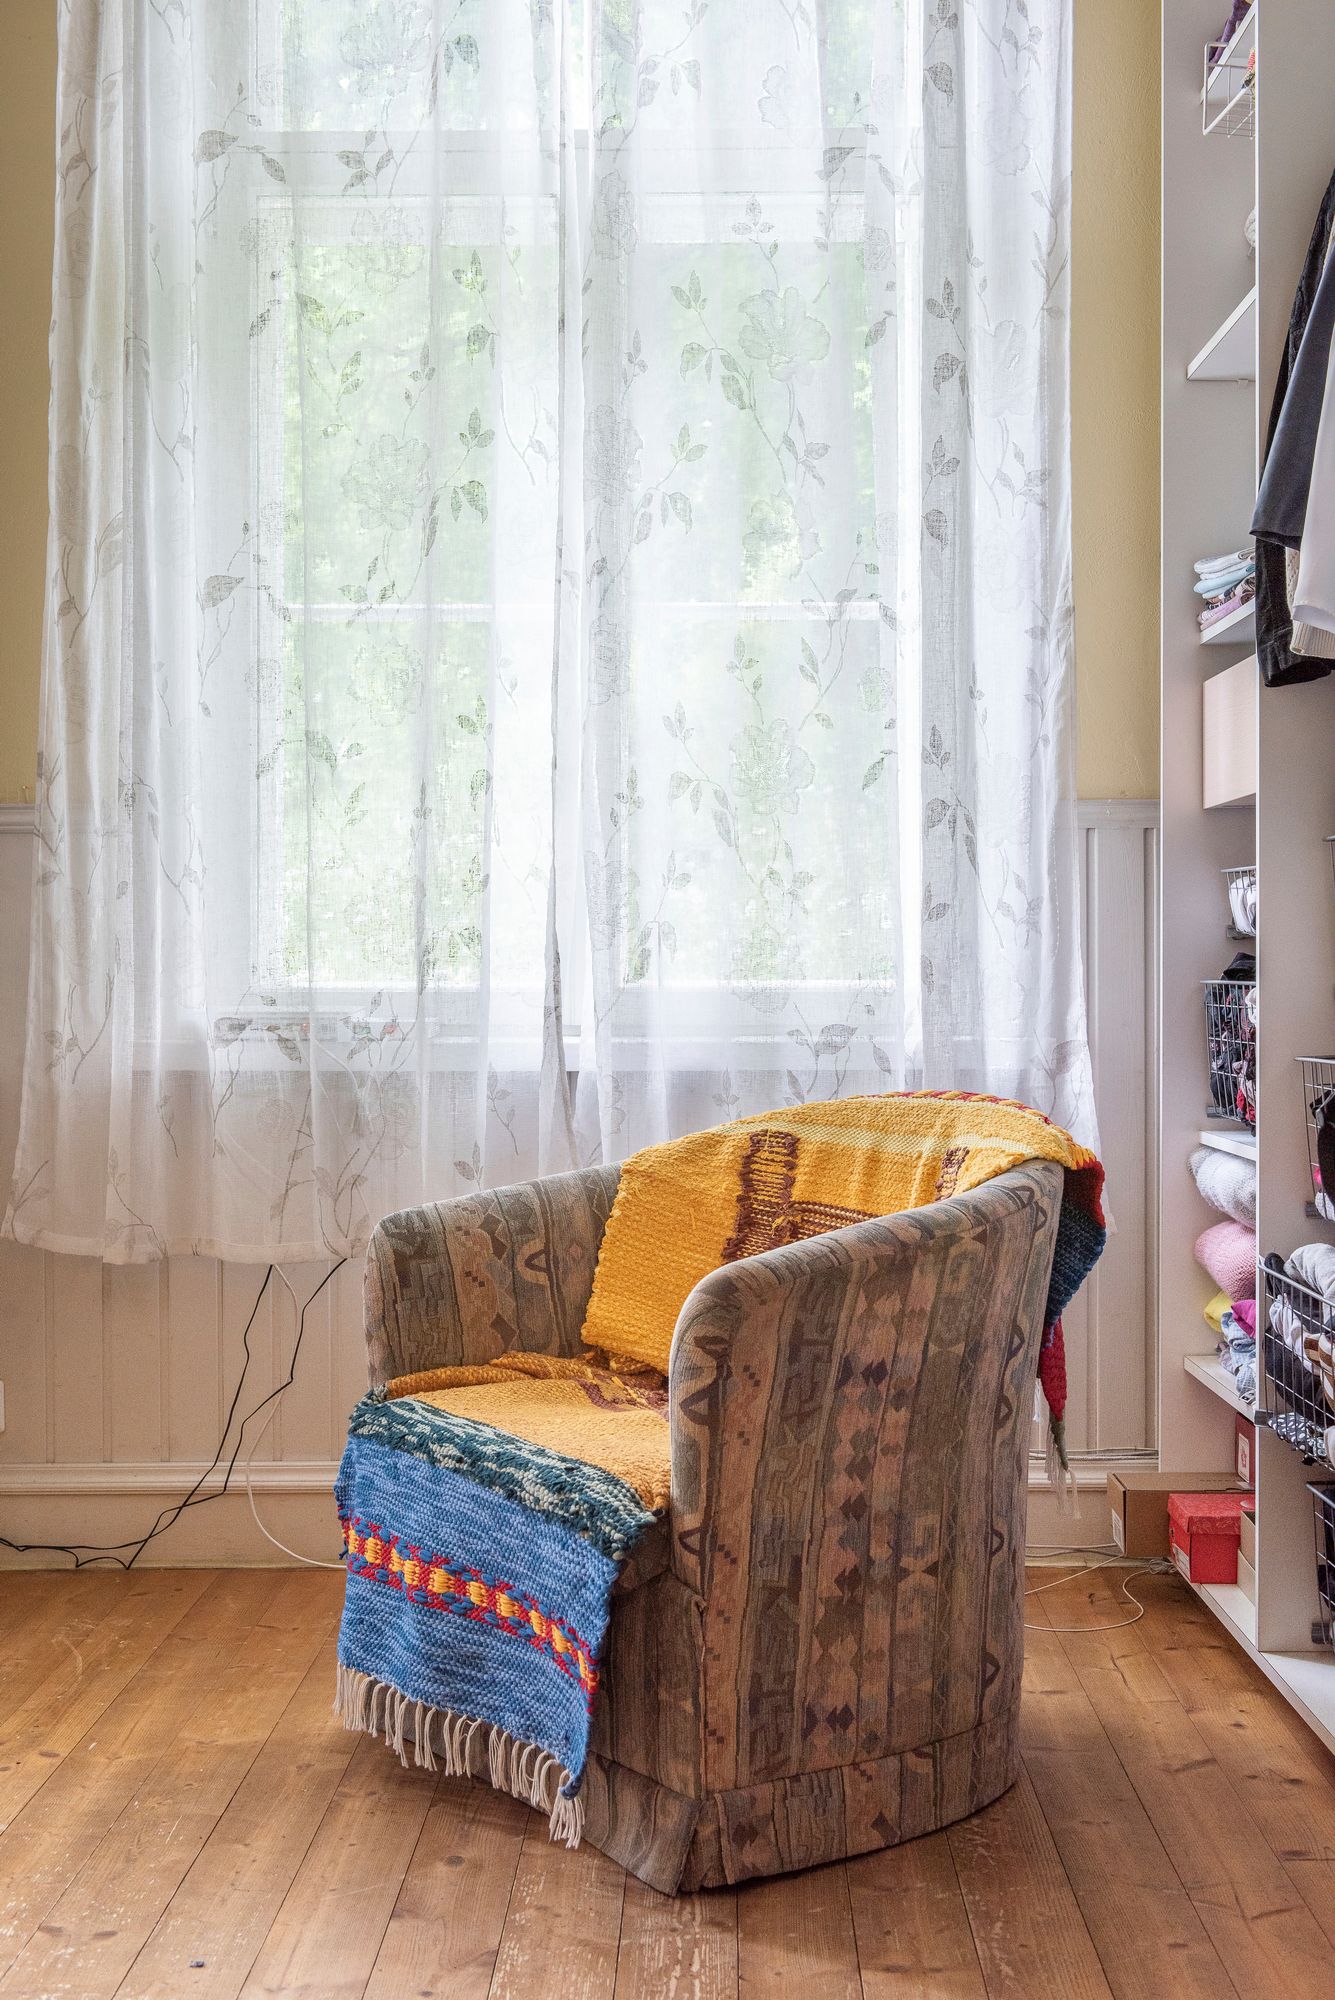 Nojatuolia koristaa inkerinsuomalaisen ystävän kutoma matto. © Pauliina Salonen